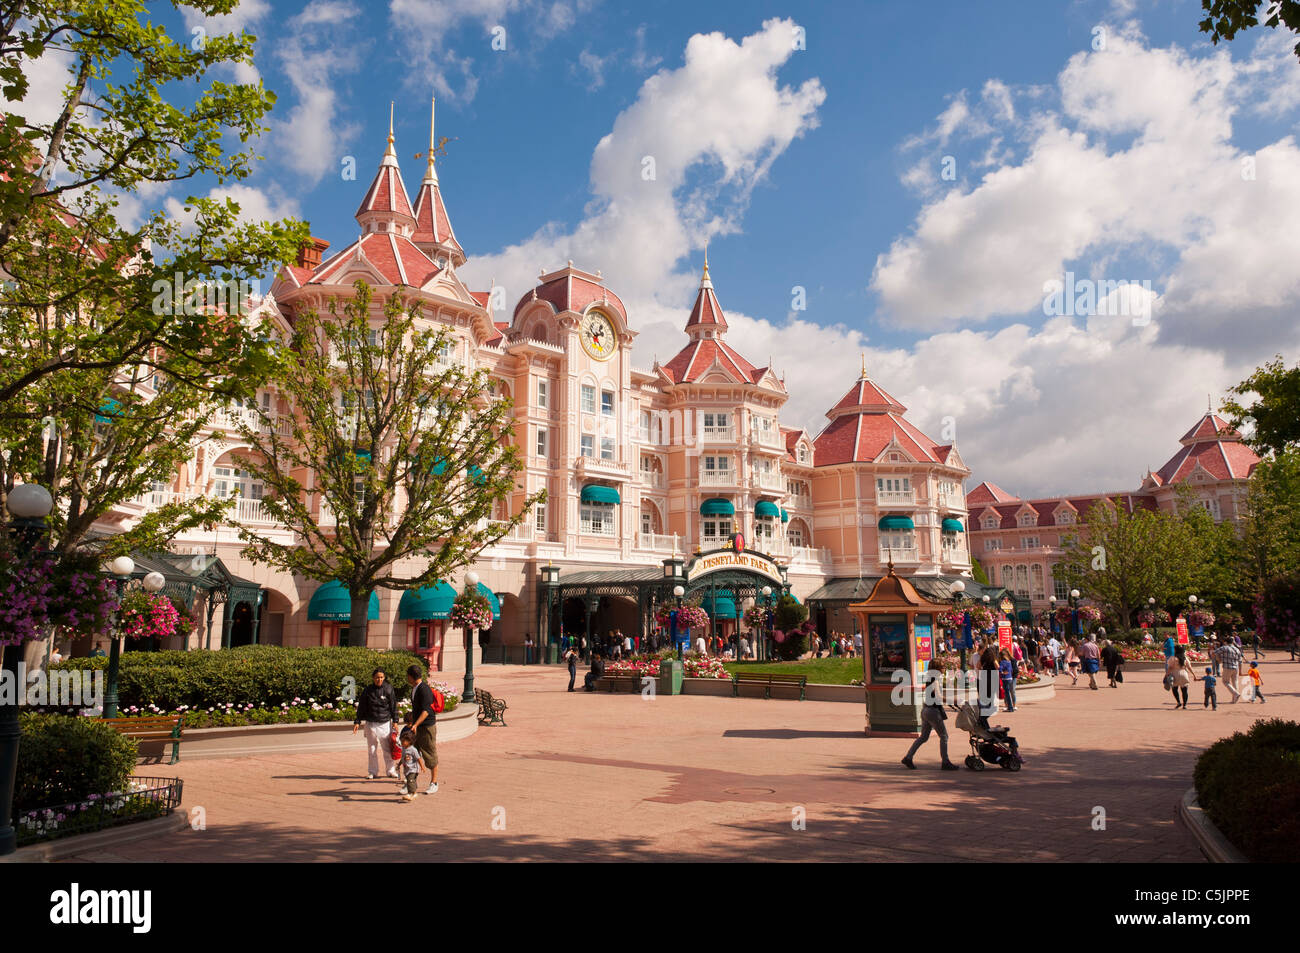 Das Disneyland Hotel in Disneyland Paris in Frankreich Stockfoto